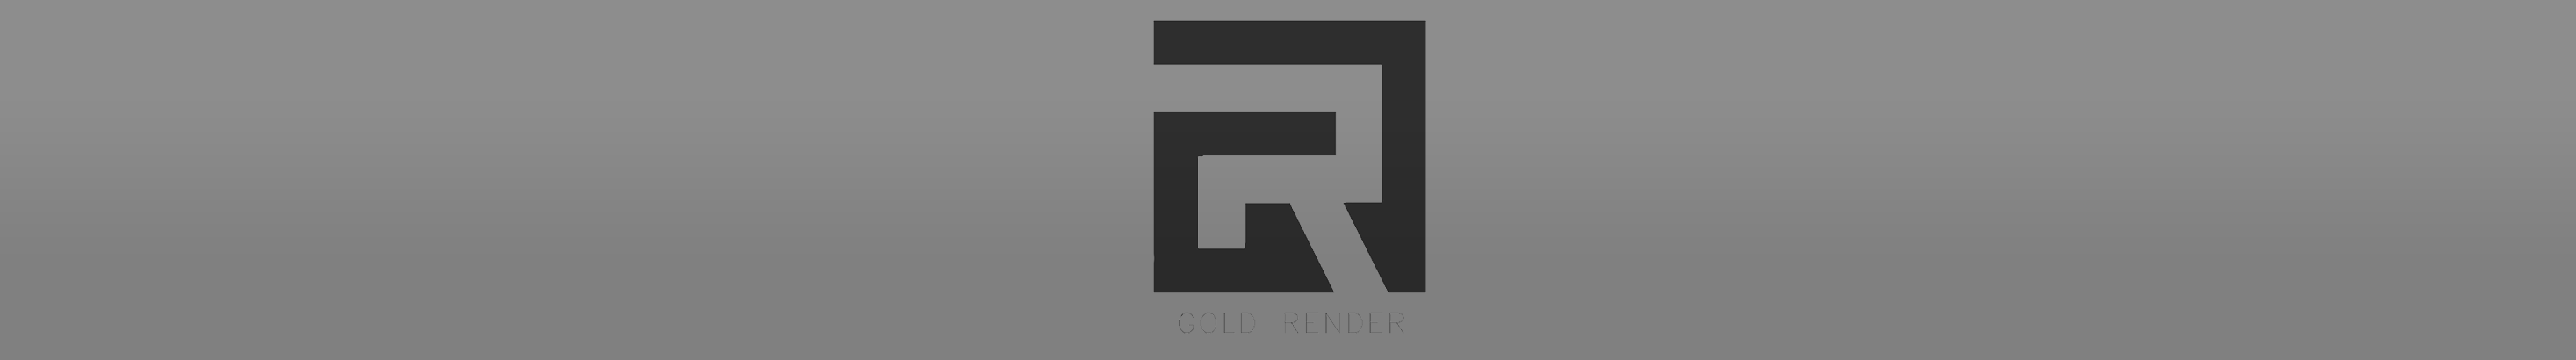 GOLD RENDER 的個人檔案橫幅